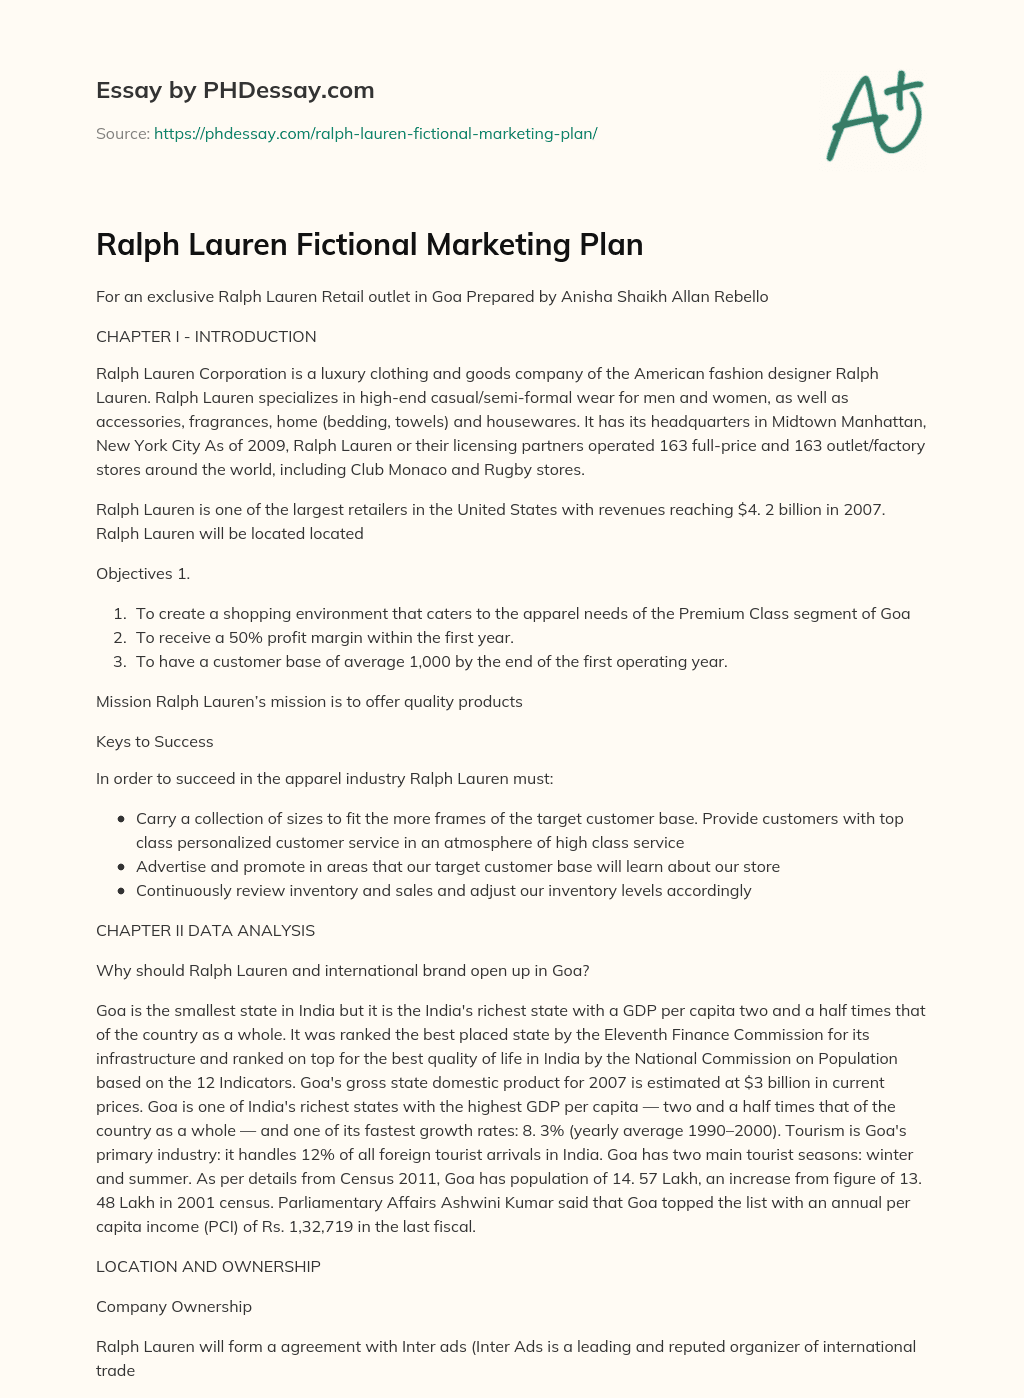 Ralph Lauren Fictional Marketing Plan essay